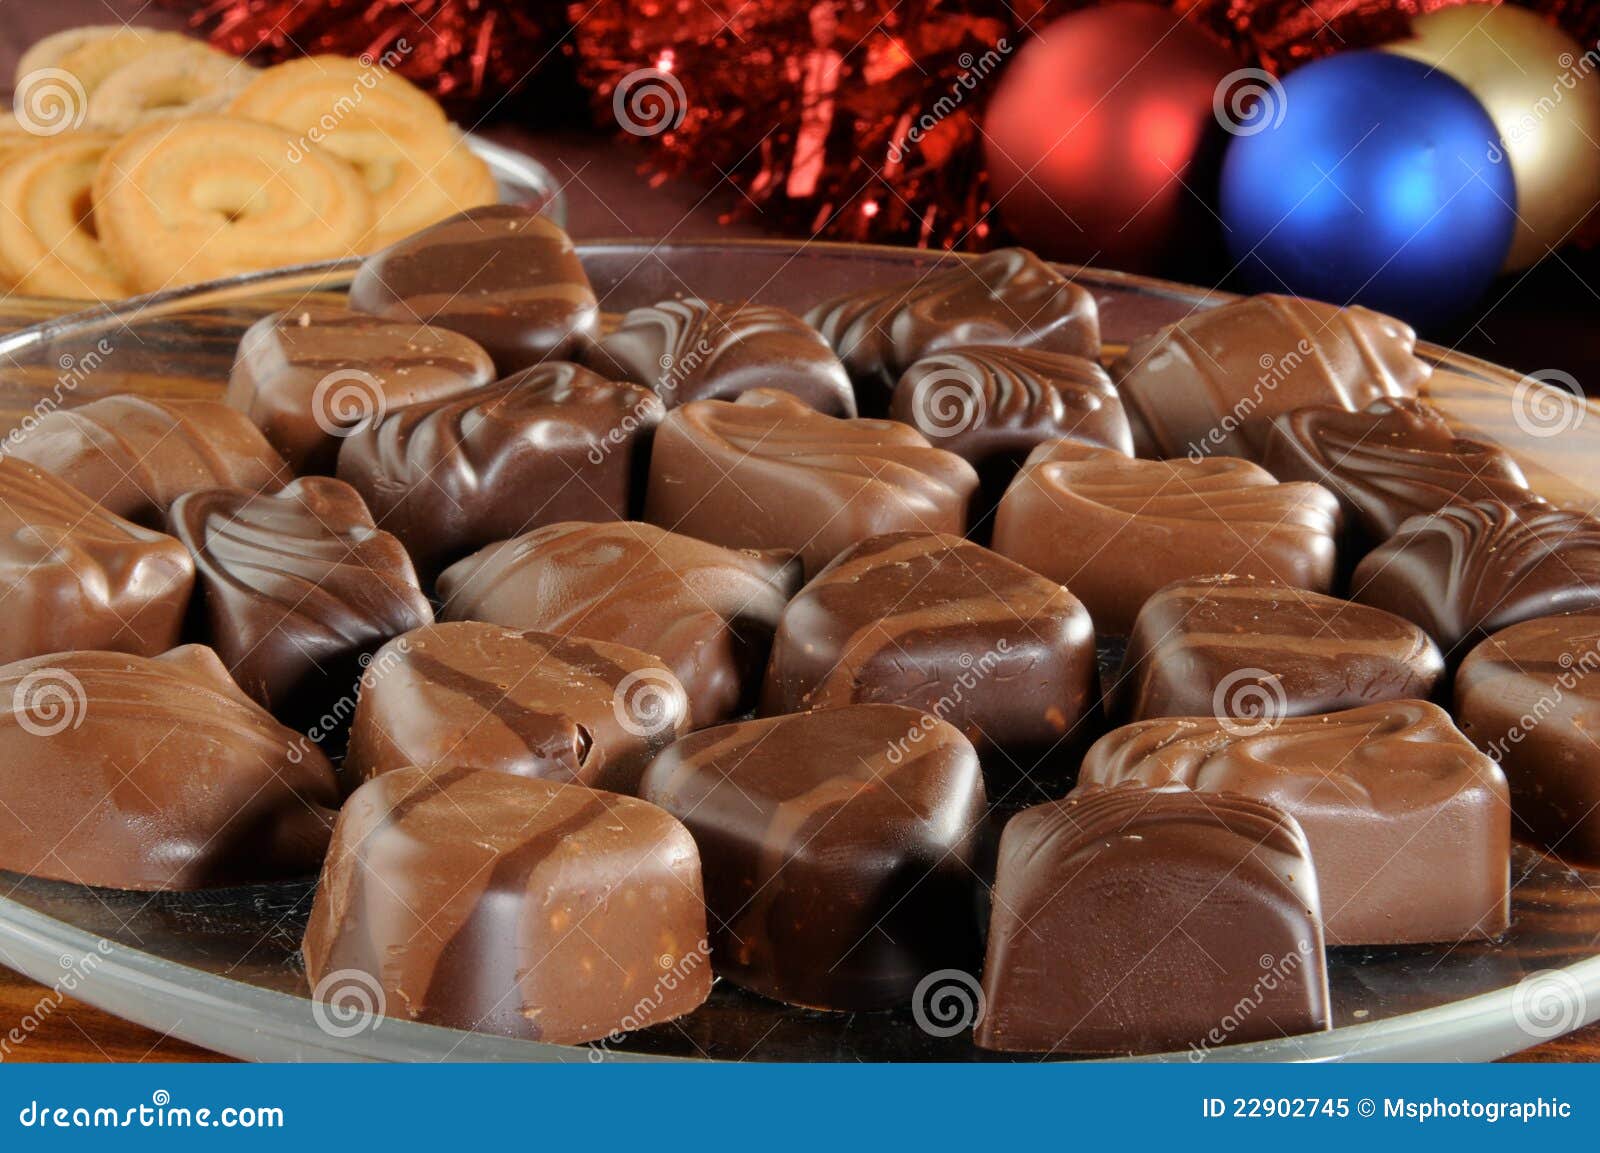 chocolates for christmas